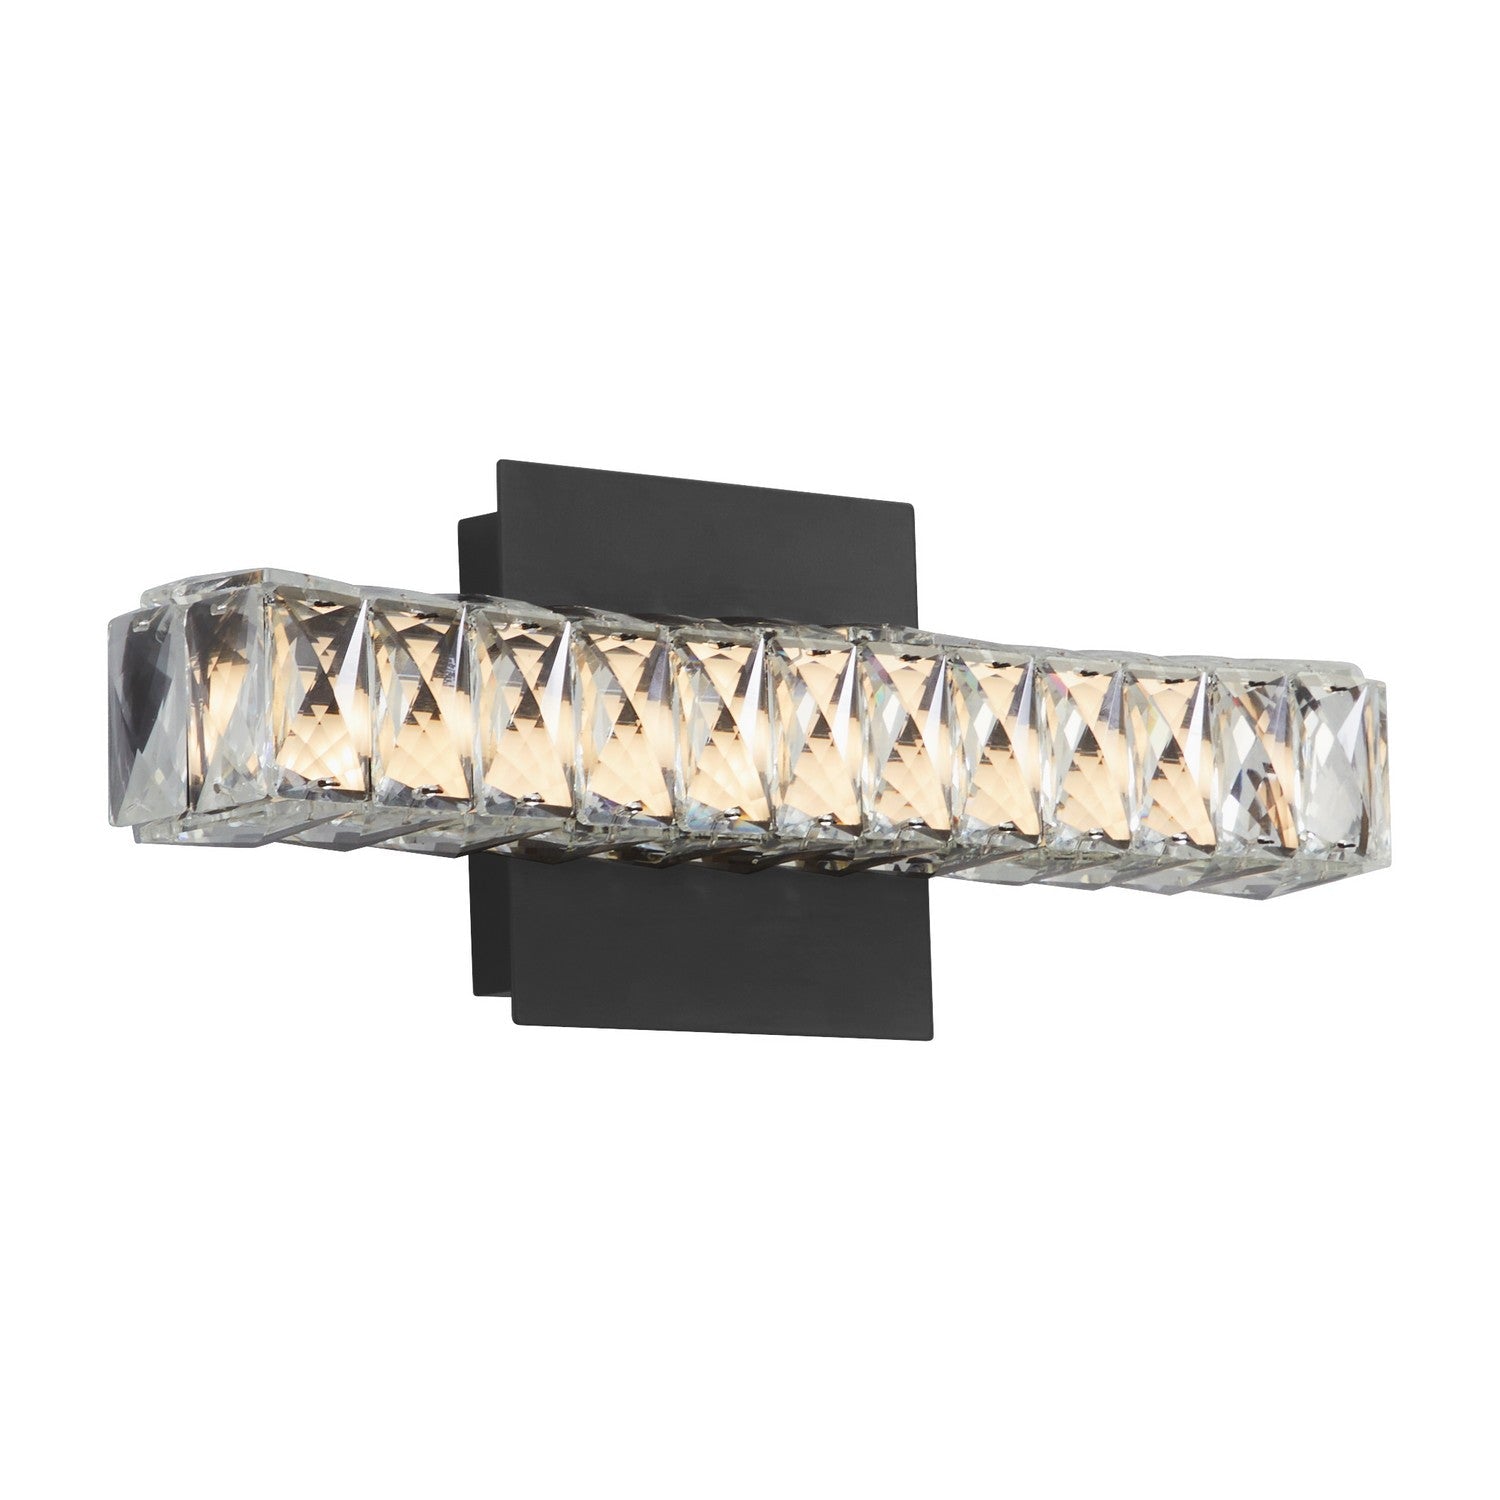 Oxygen Elan 3-572-15 Modern LED Wall Light Fixture - Black, Cut Glass Diffuser